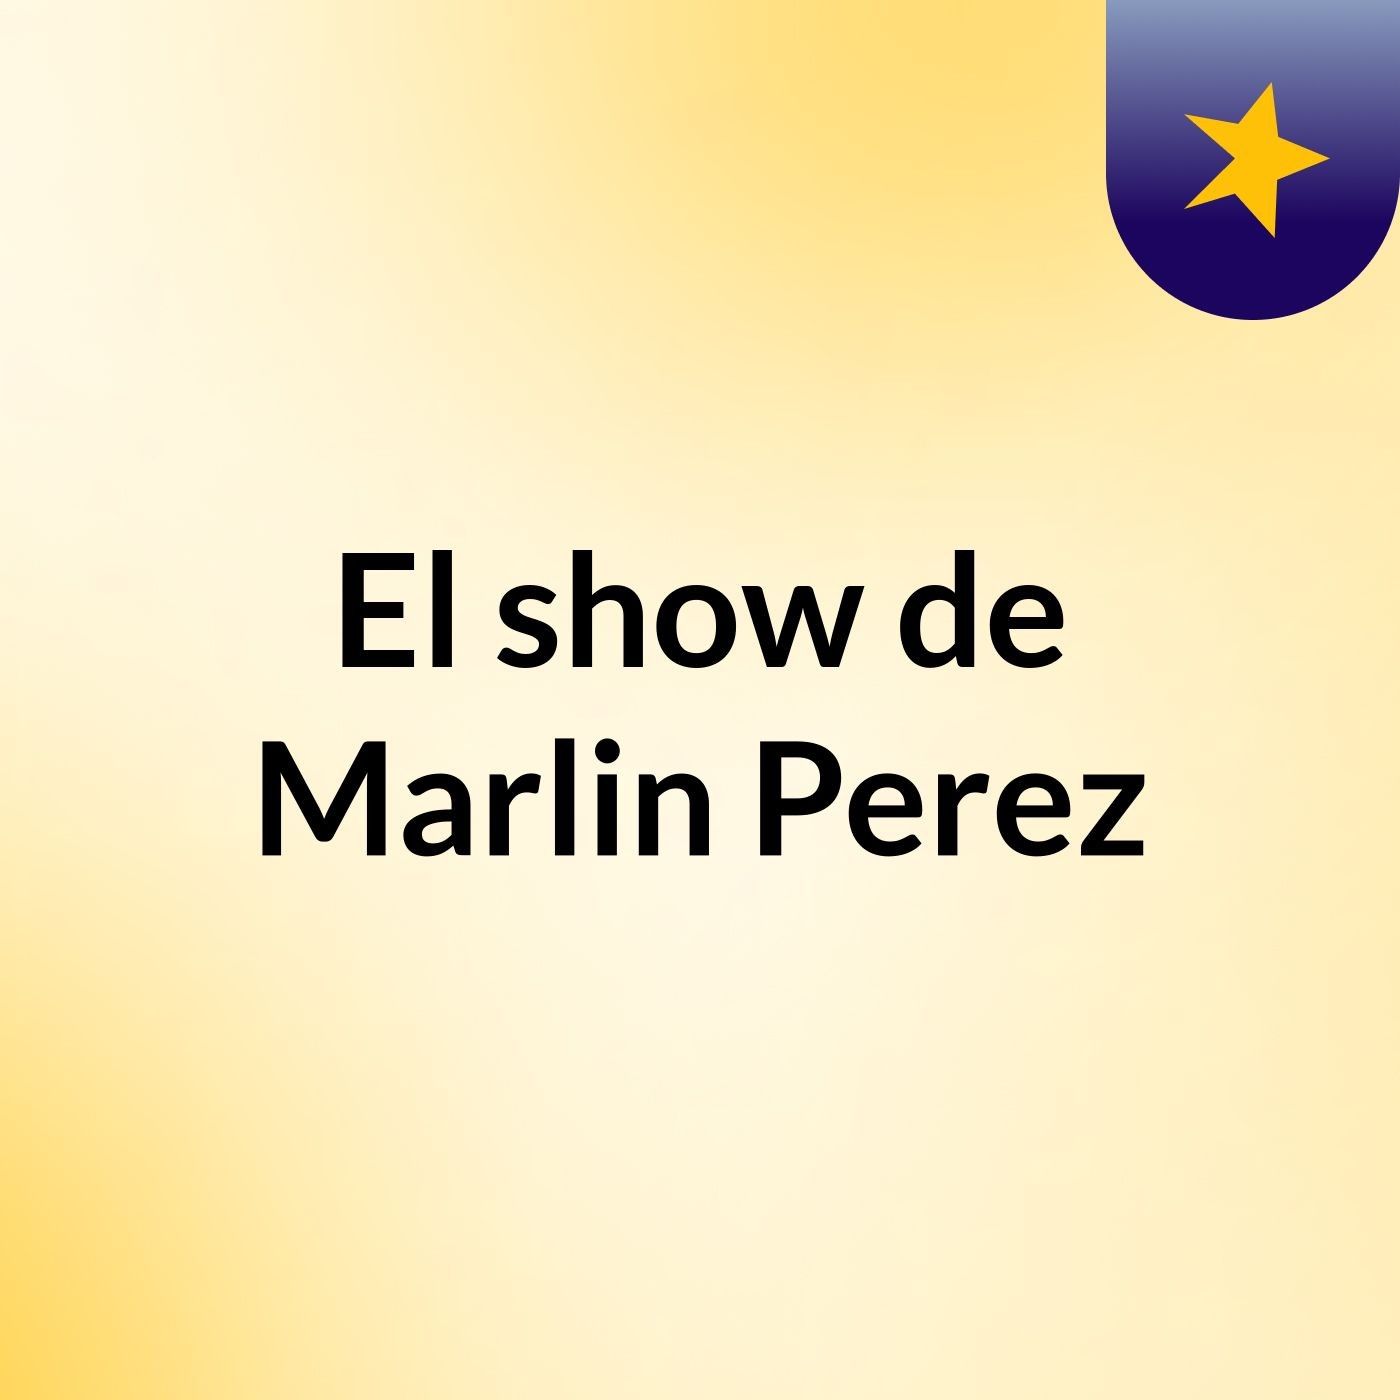 El show de Marlin Perez